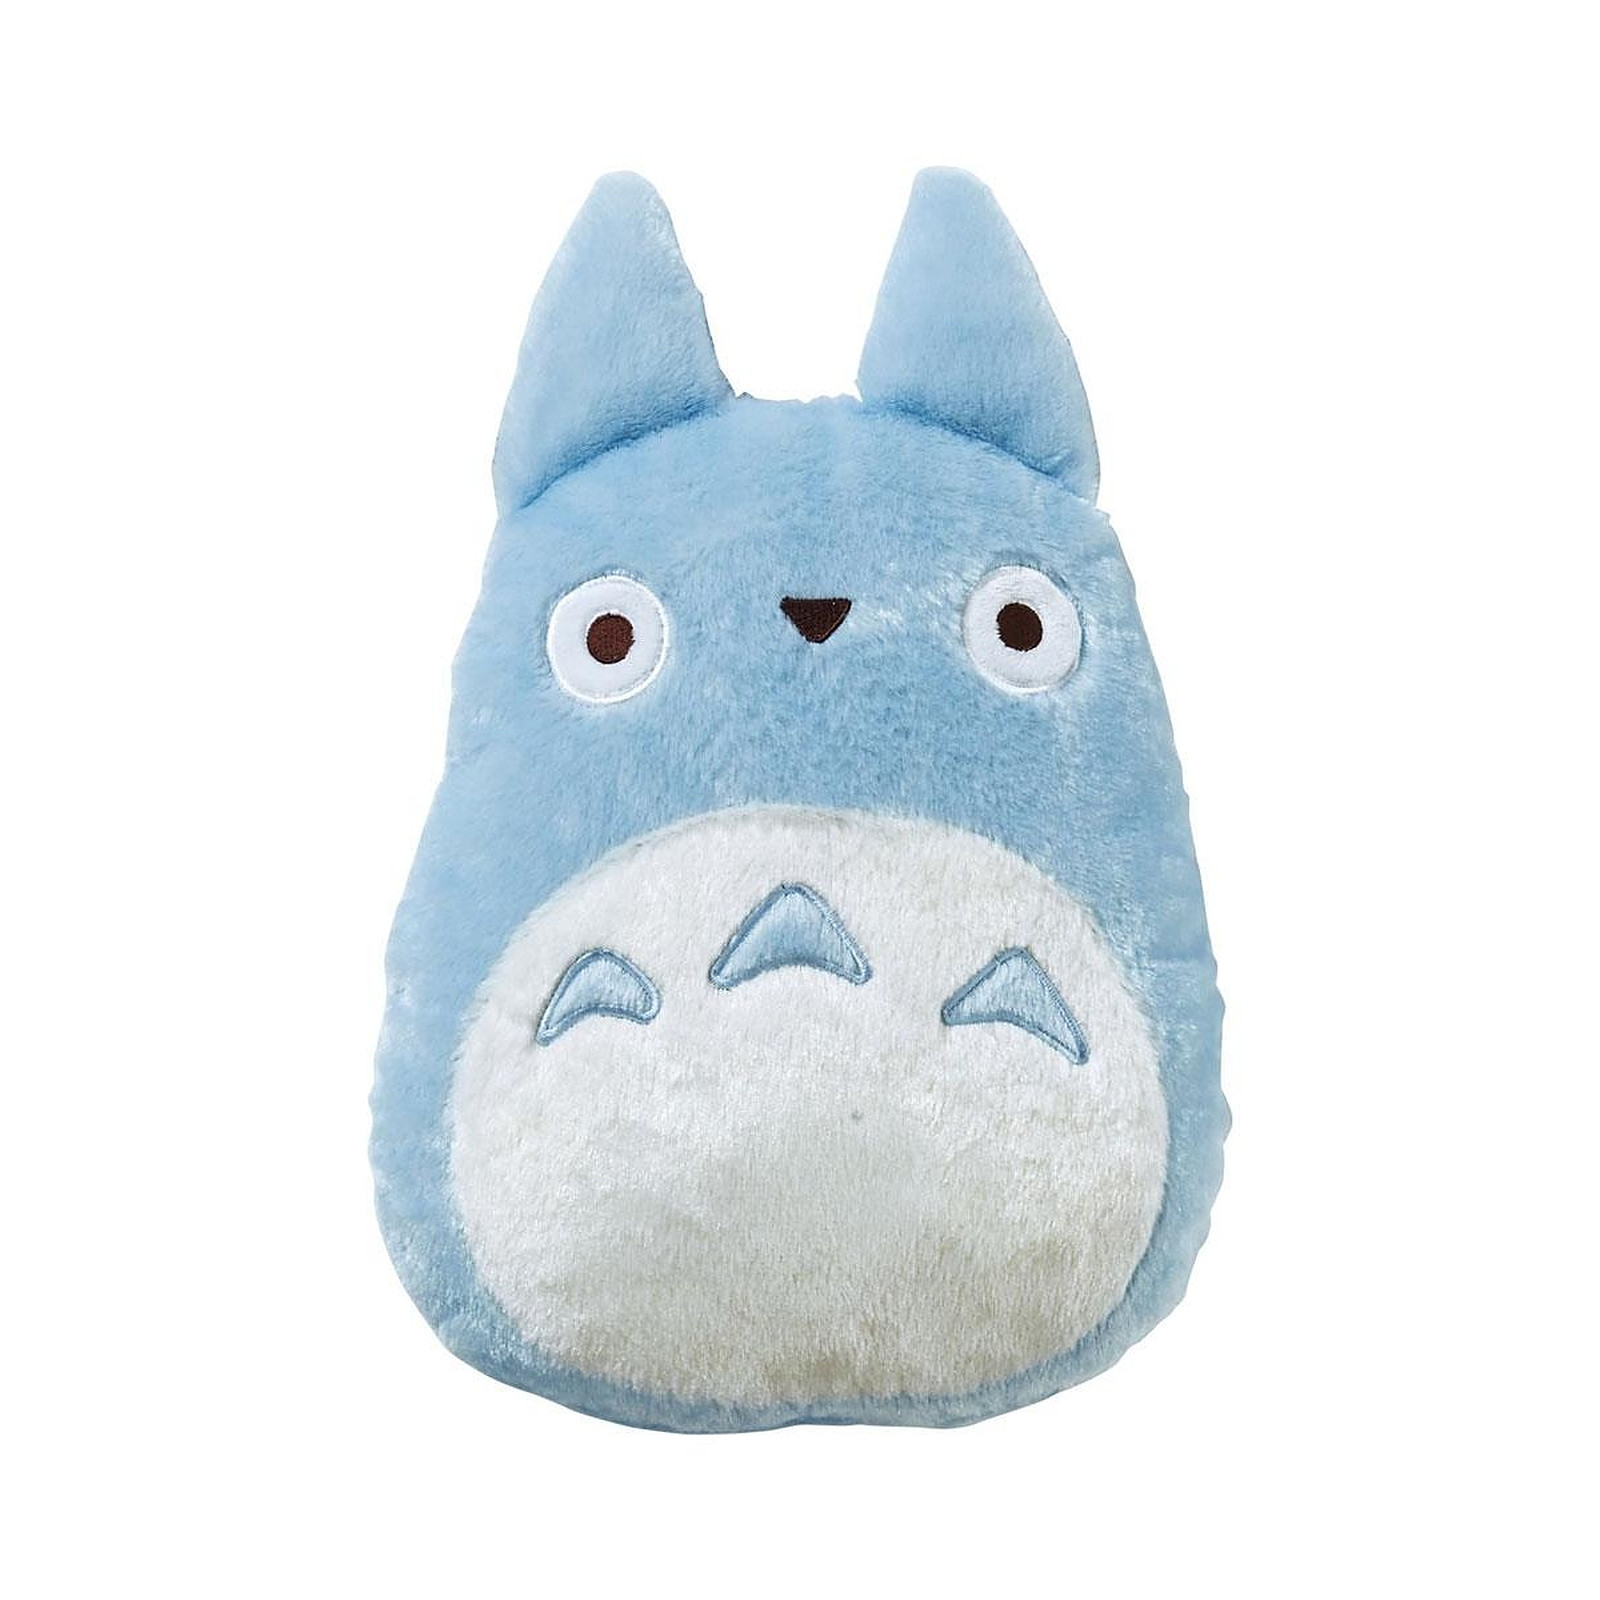 Mon voisin Totoro - Coussin peluche Blue Totoro 33 x 29 cm - Peluches Marushin